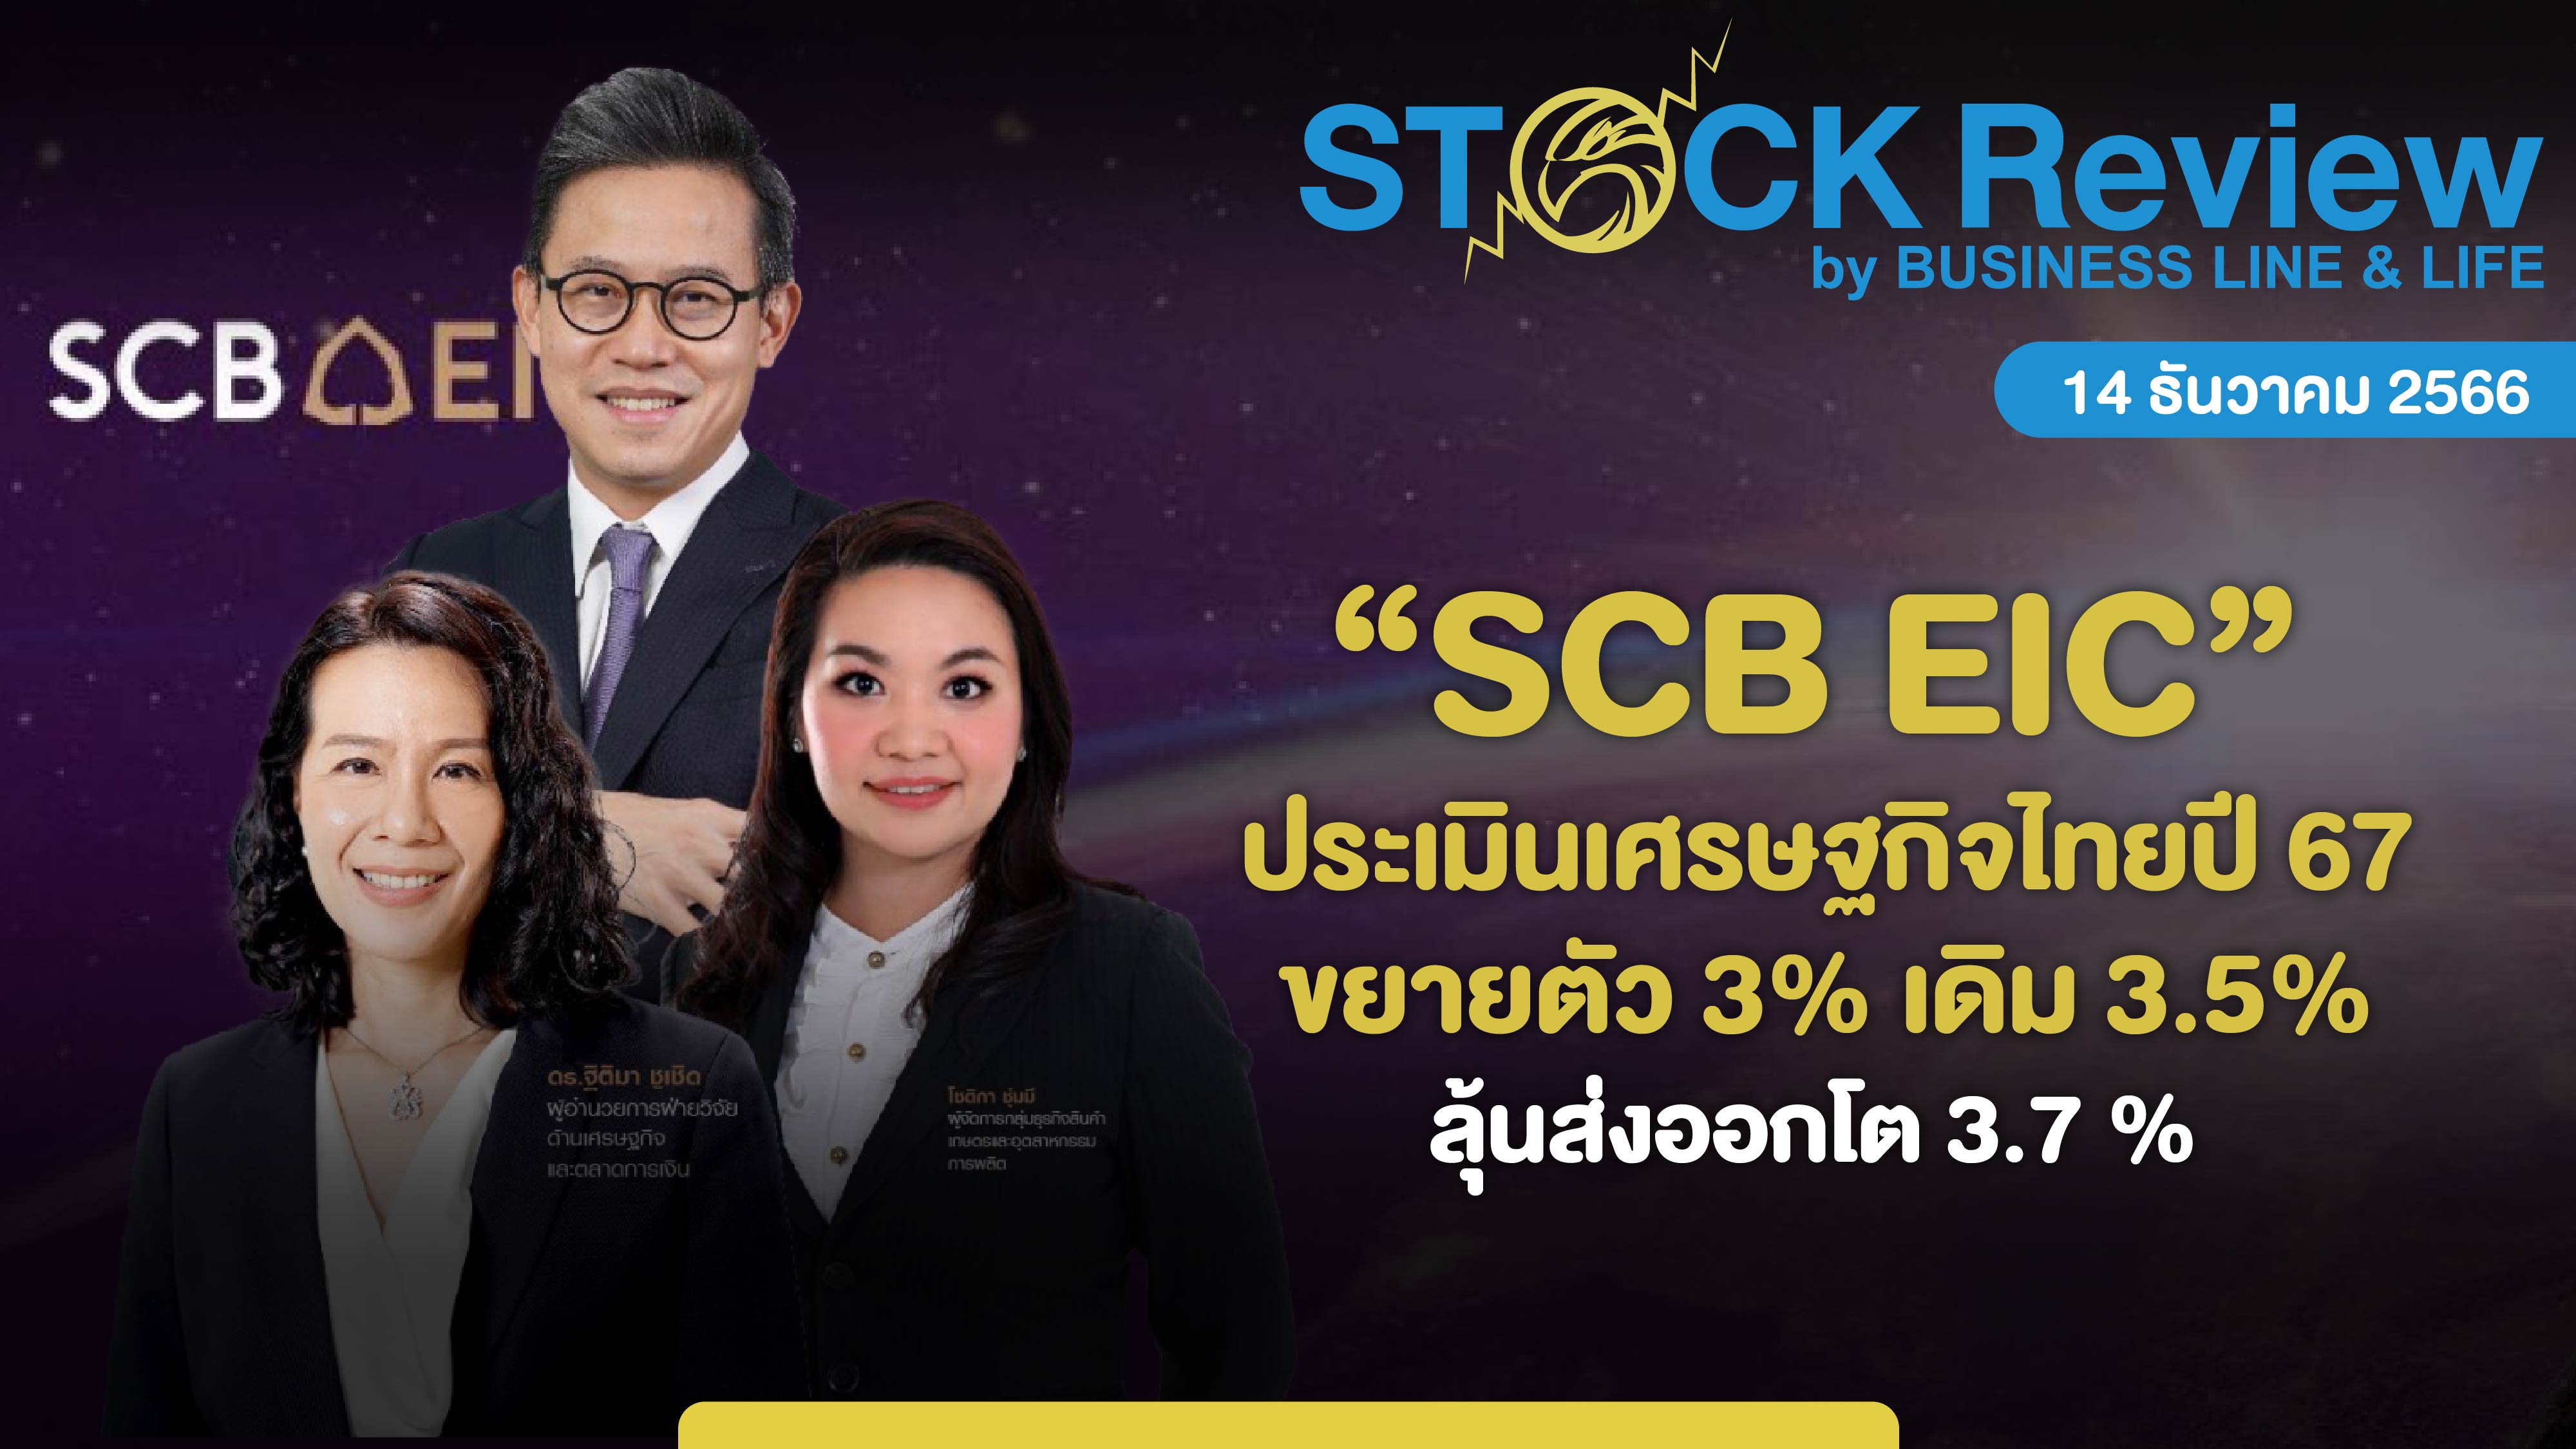 “SCB EIC” ประเมินเศรษฐกิจไทยปี 67 ขยายตัว 3%เดิม 3.5% ลุ้นส่งออกโต 3.7%